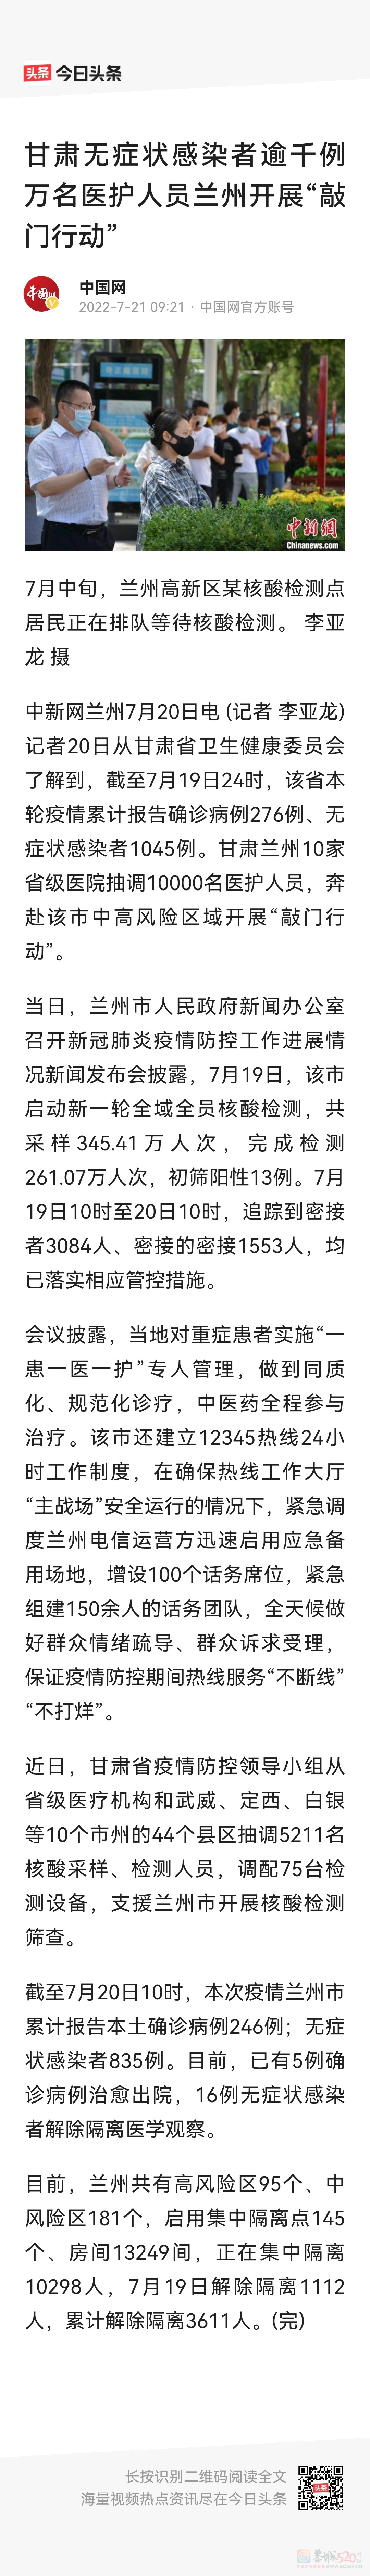 广西新增52+135，涠洲岛662名游客安全返程190 / 作者:猛龙 / 帖子ID:297608